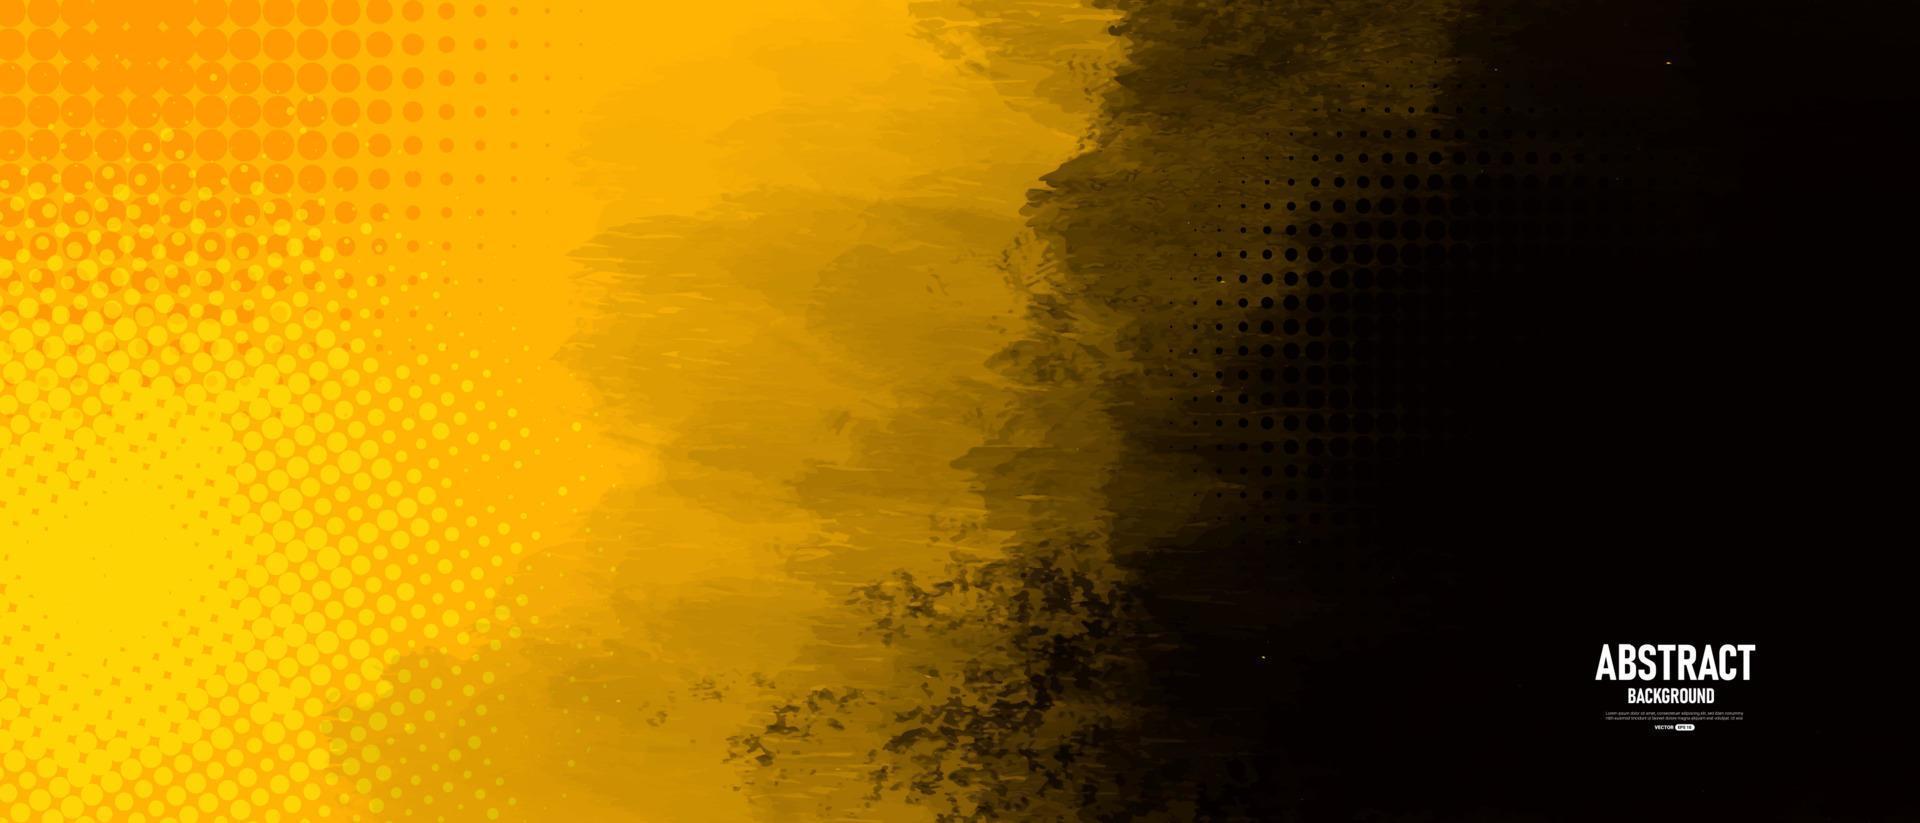 schwarzer und gelber abstrakter Hintergrund mit Schmutzbeschaffenheit. vektor